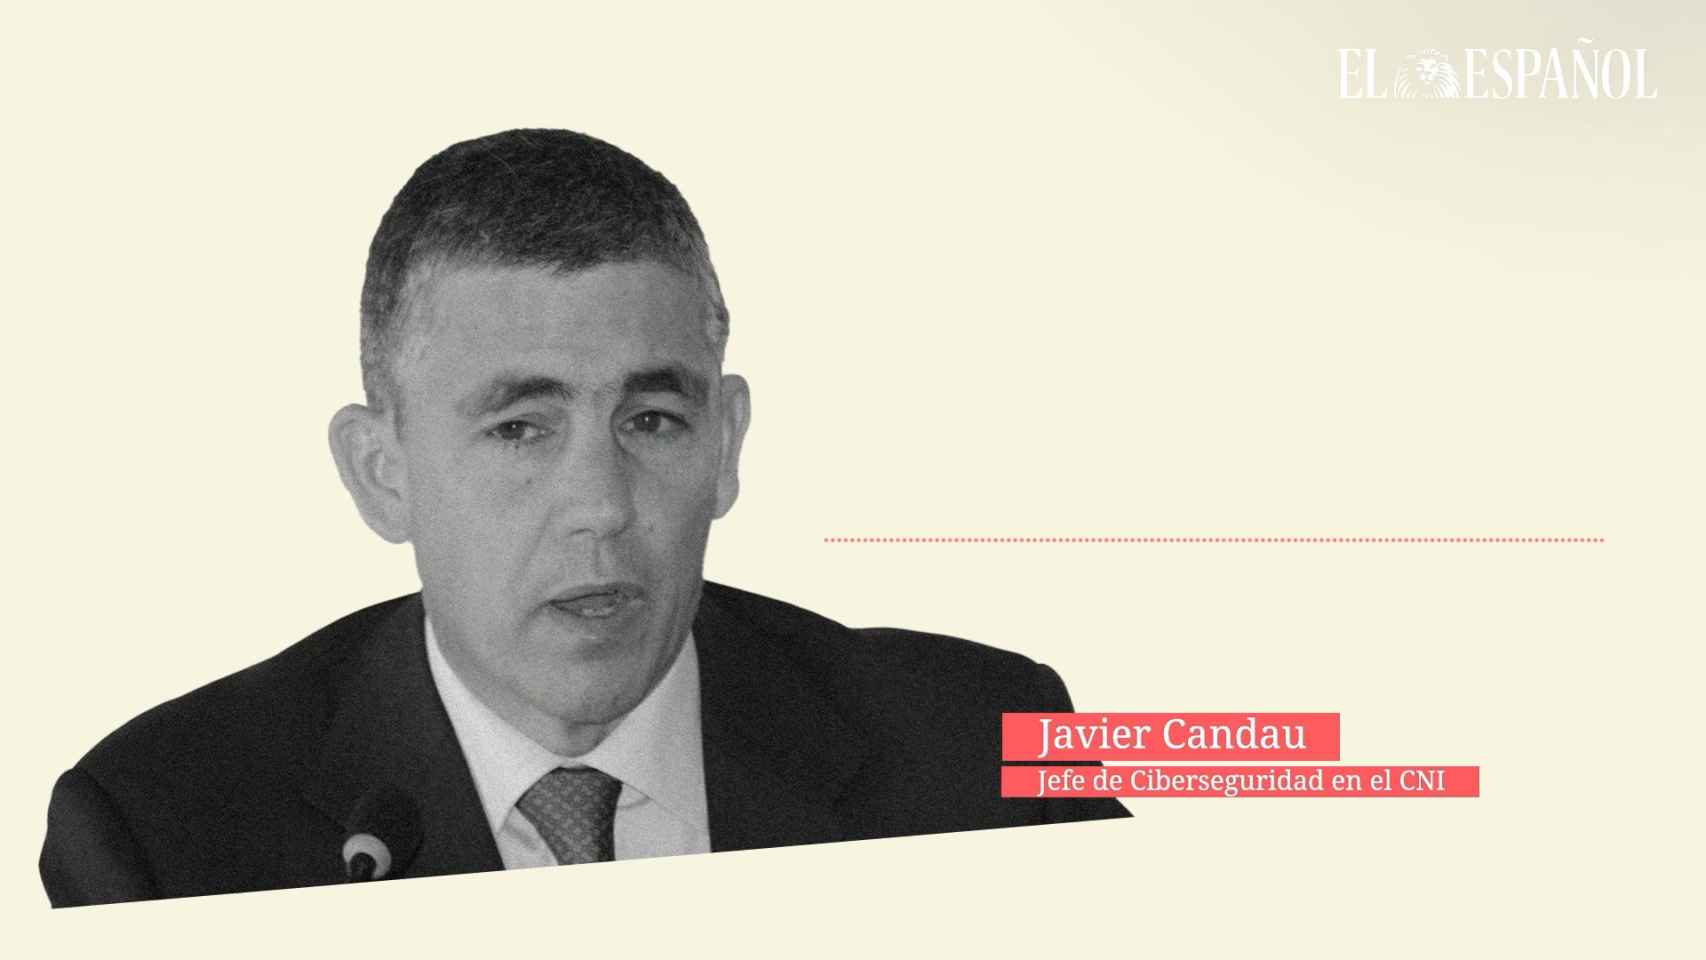 Javier Candau, Jefe de Ciberseguridad en el CNI (II)